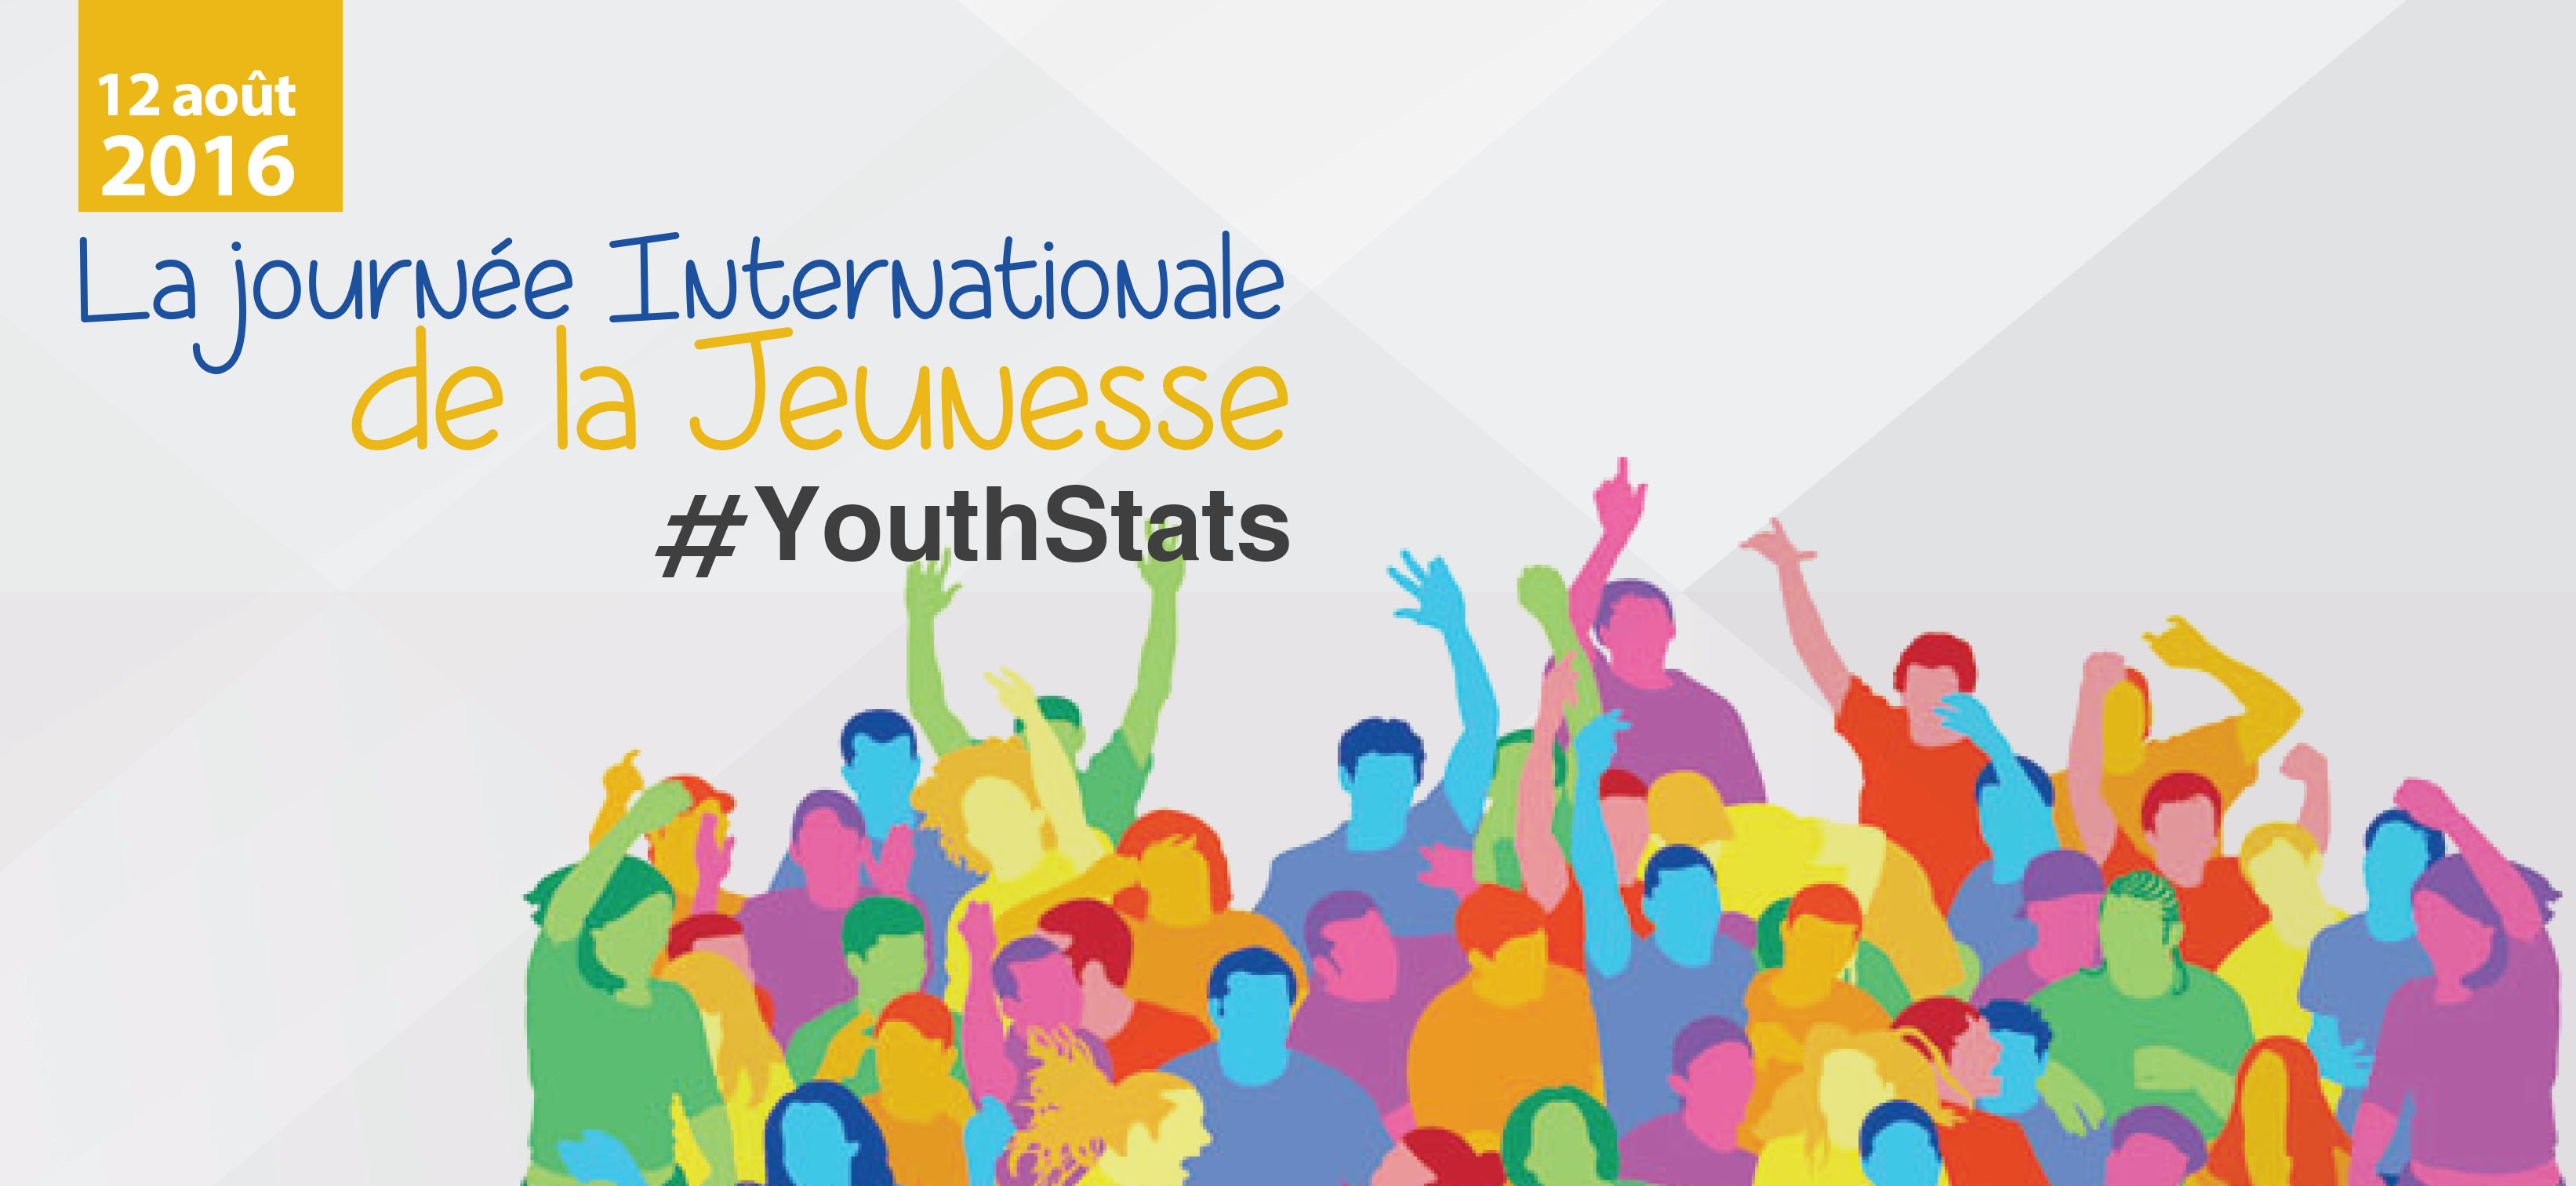 (Article en Anglais) Journée Internationale de la Jeunesse : Statistiques sur la jeunesse